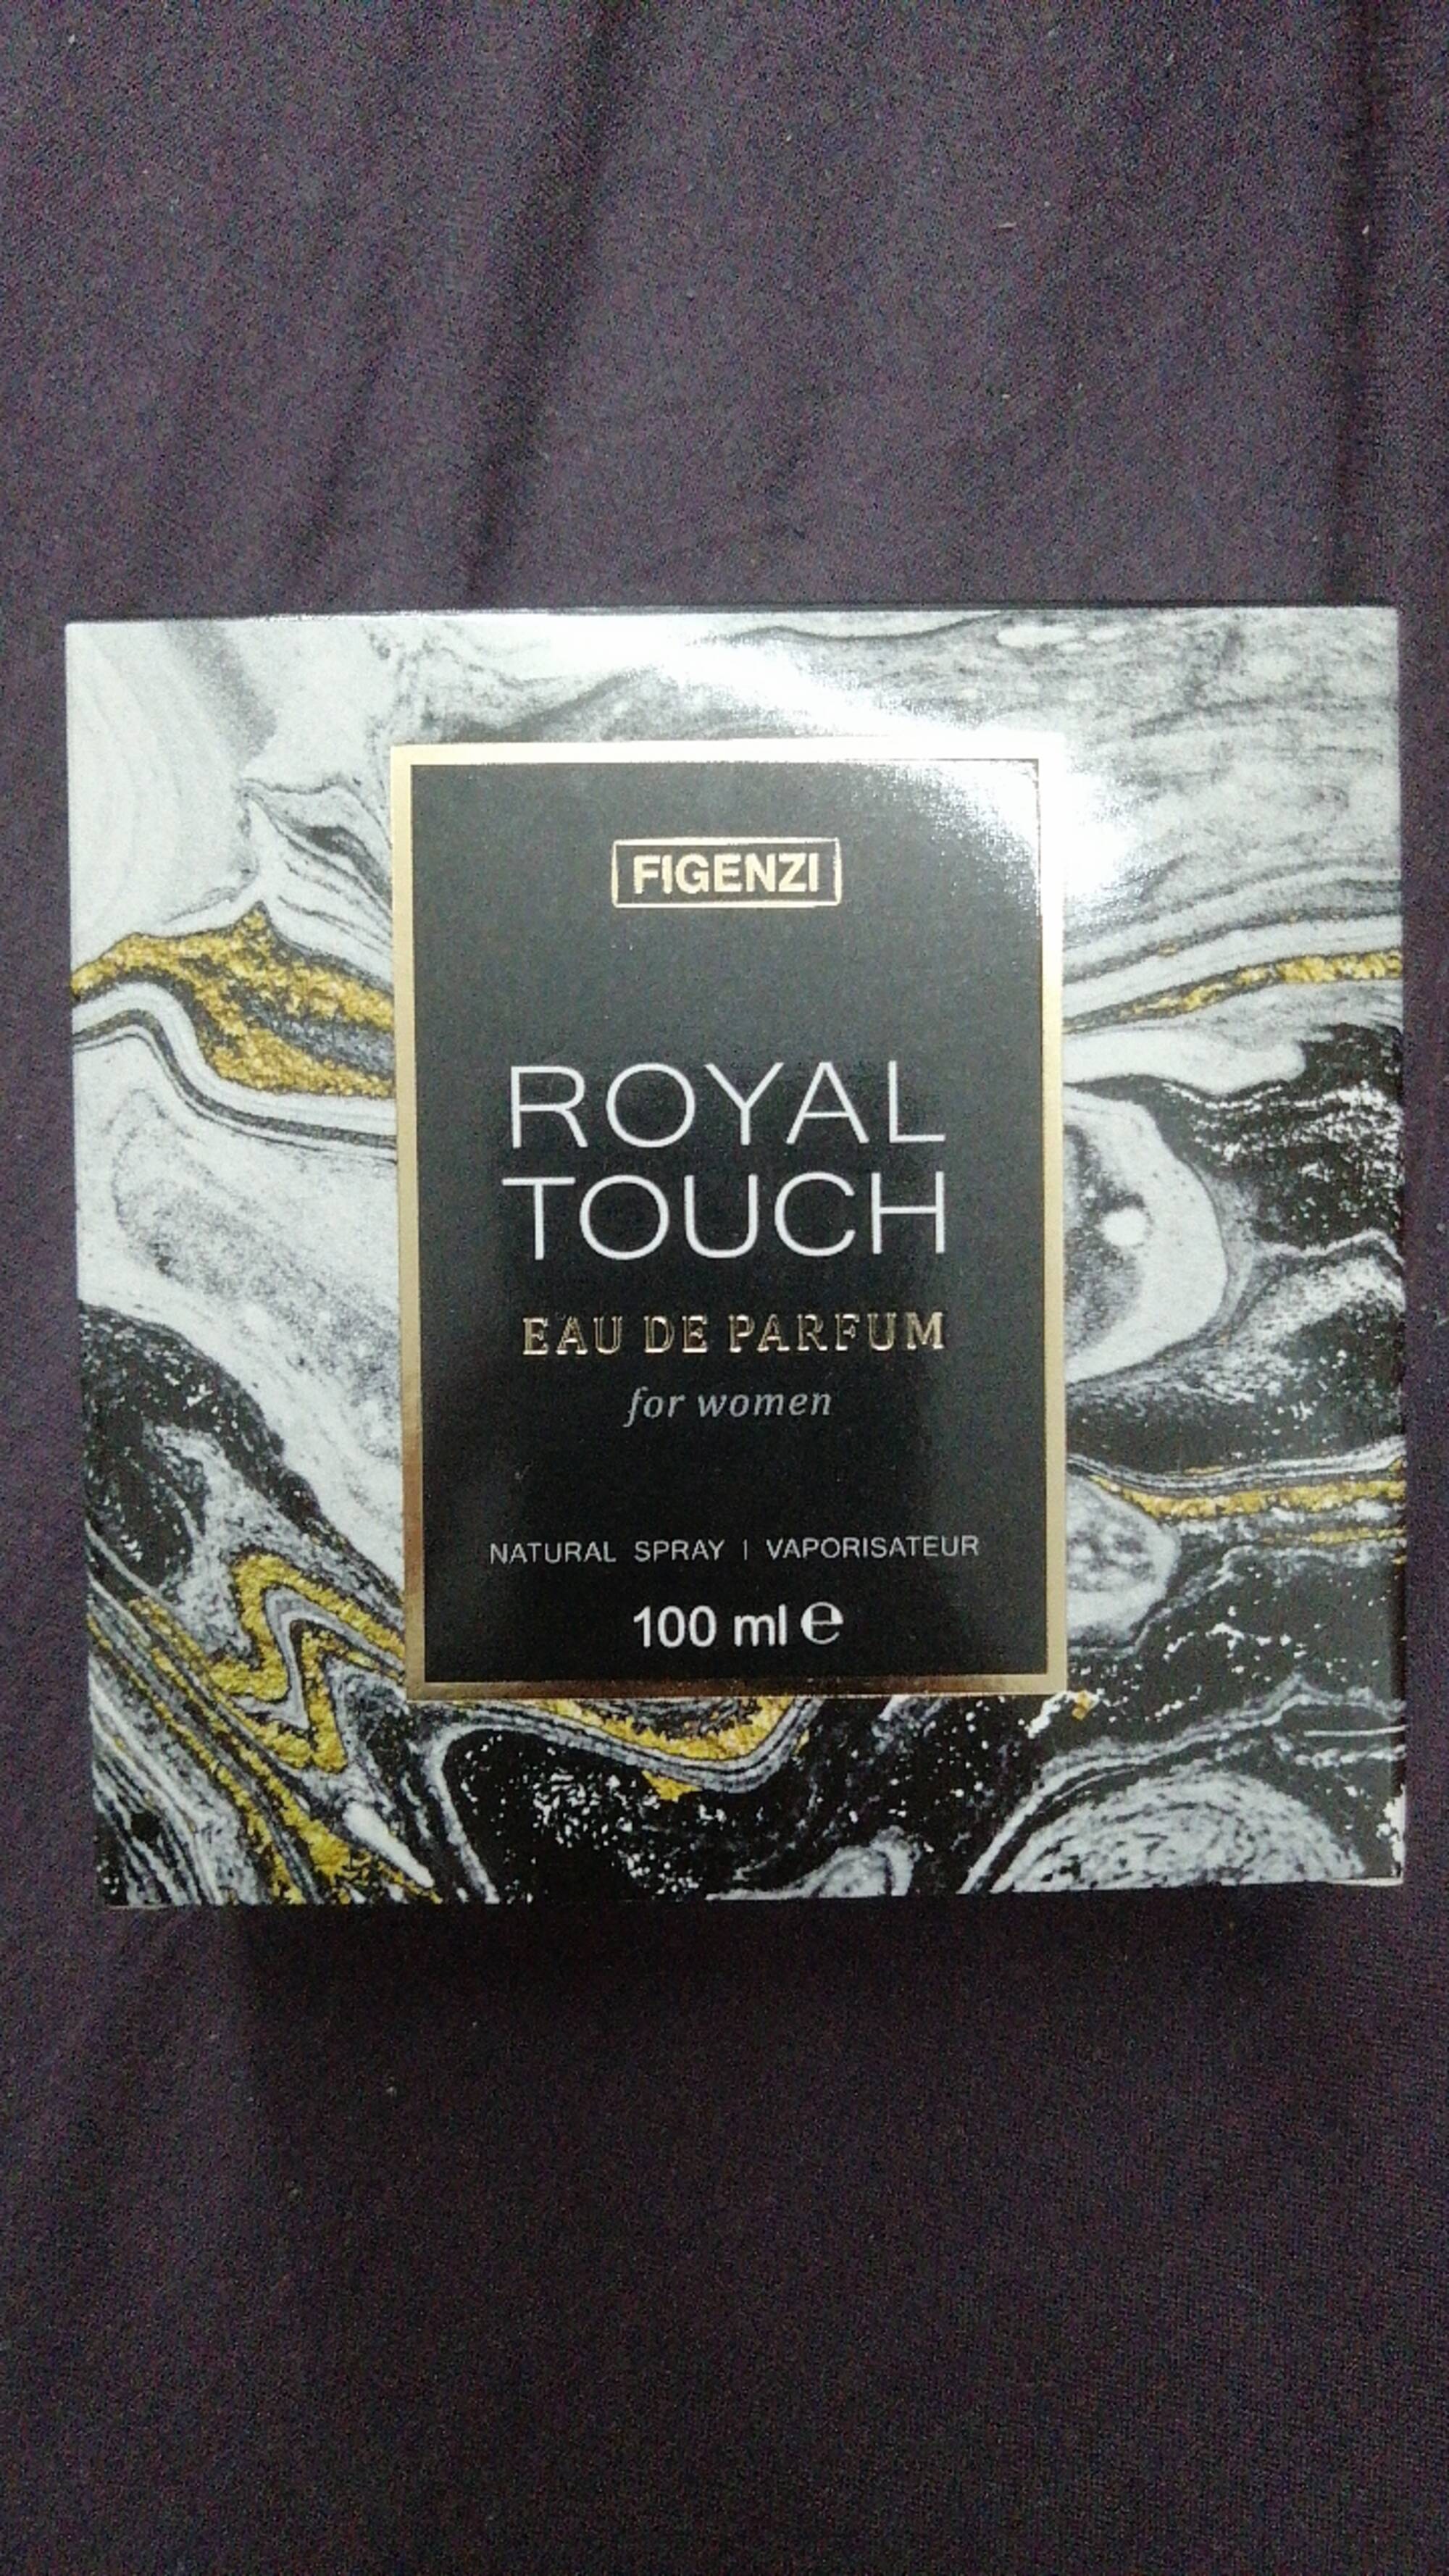 FIGENZI - Royal touch for women - Eau de parfum